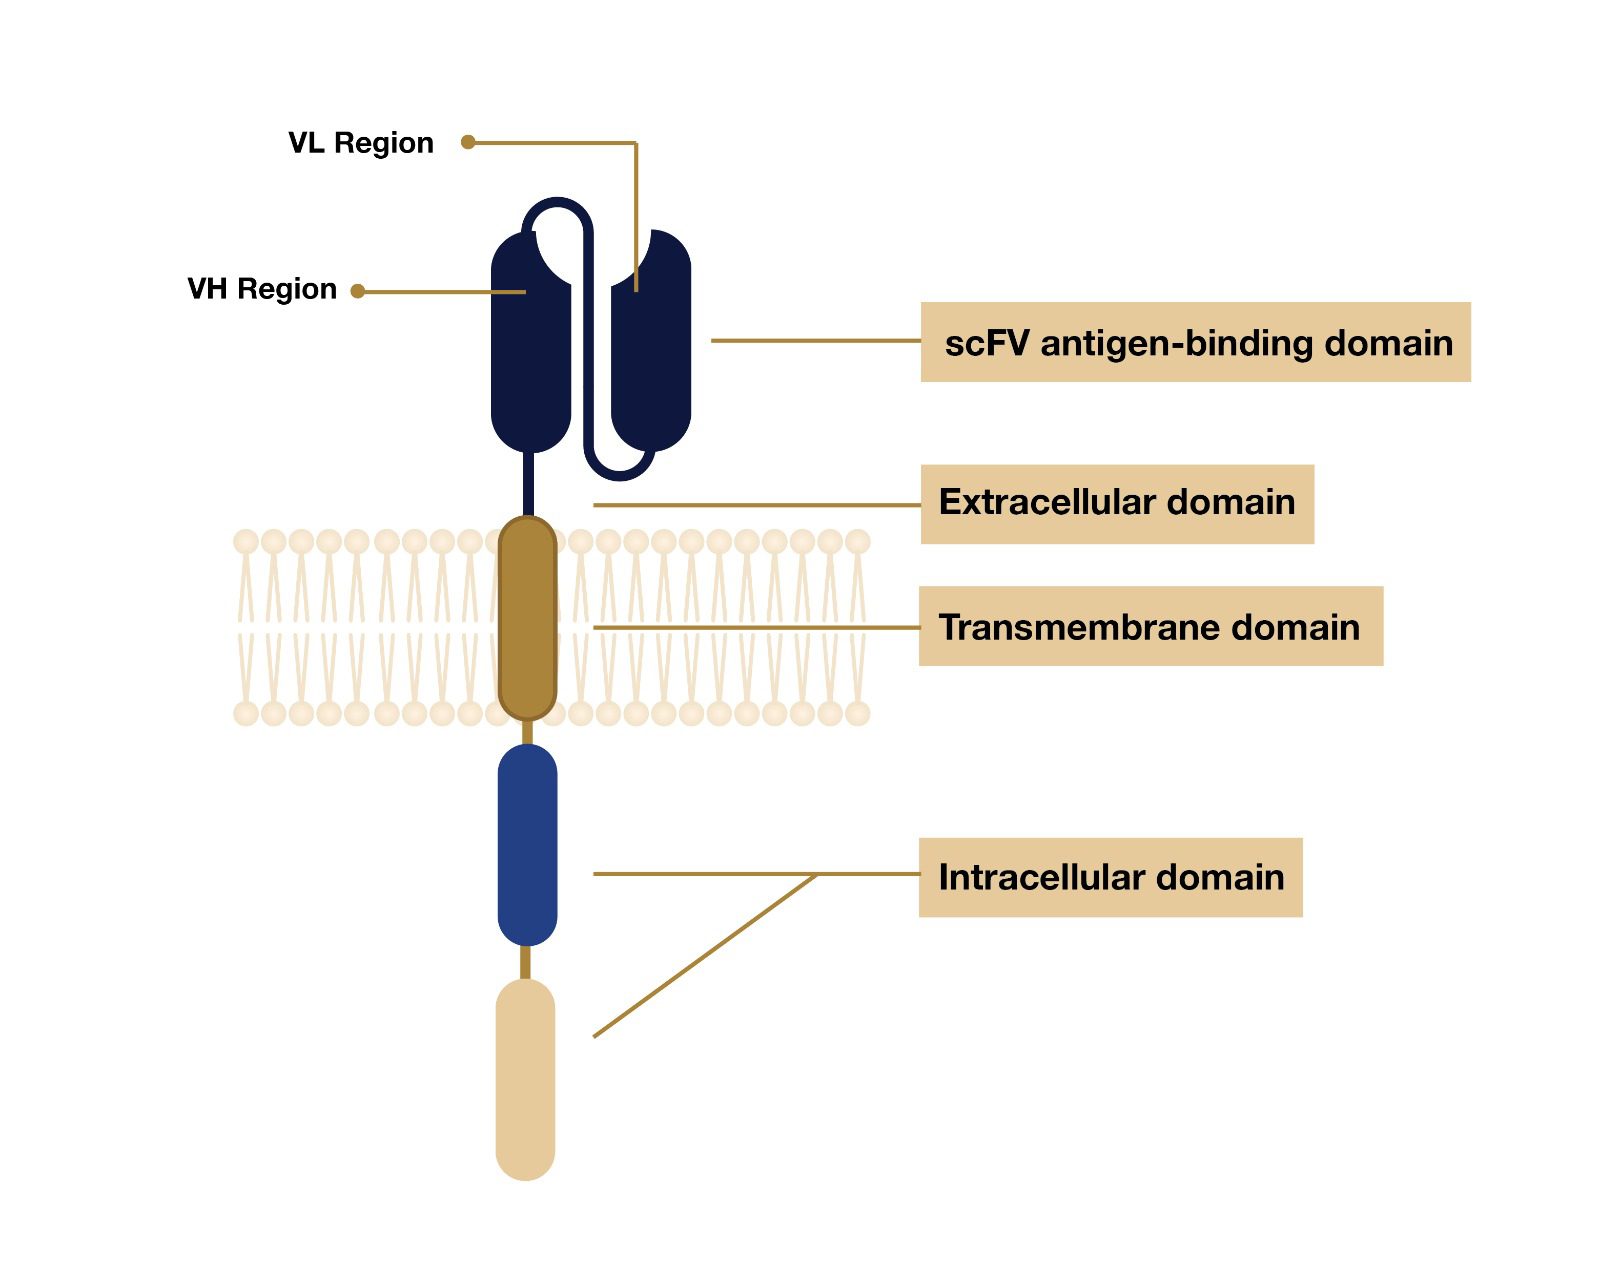 การแสดงภาพของโครงสร้างทั่วไปของ CAR-T แสดงโดเมนภายนอกเซลล์ 3 ส่วนหลัก โดเมนทรานส์เมมเบรน และโดเมนภายในเซลล์